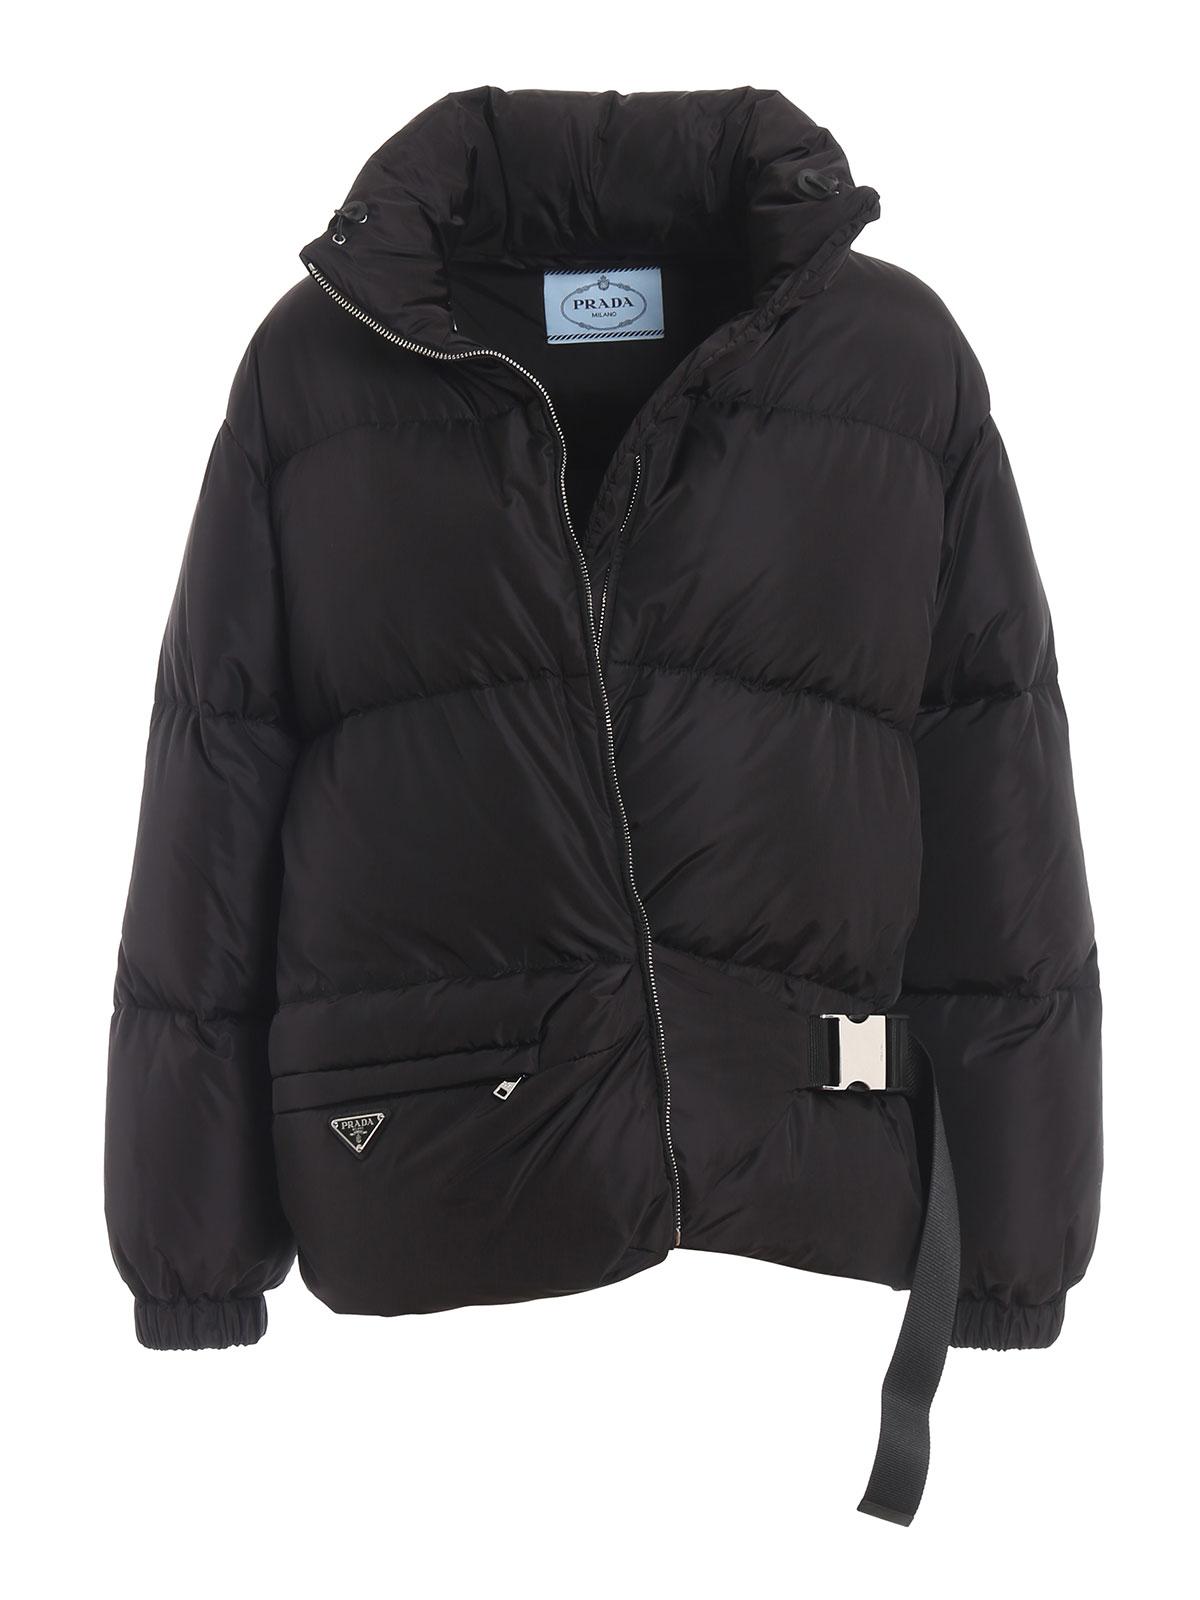 Prada Synthetic Black Nylon Over Puffer Jacket for Men - Lyst